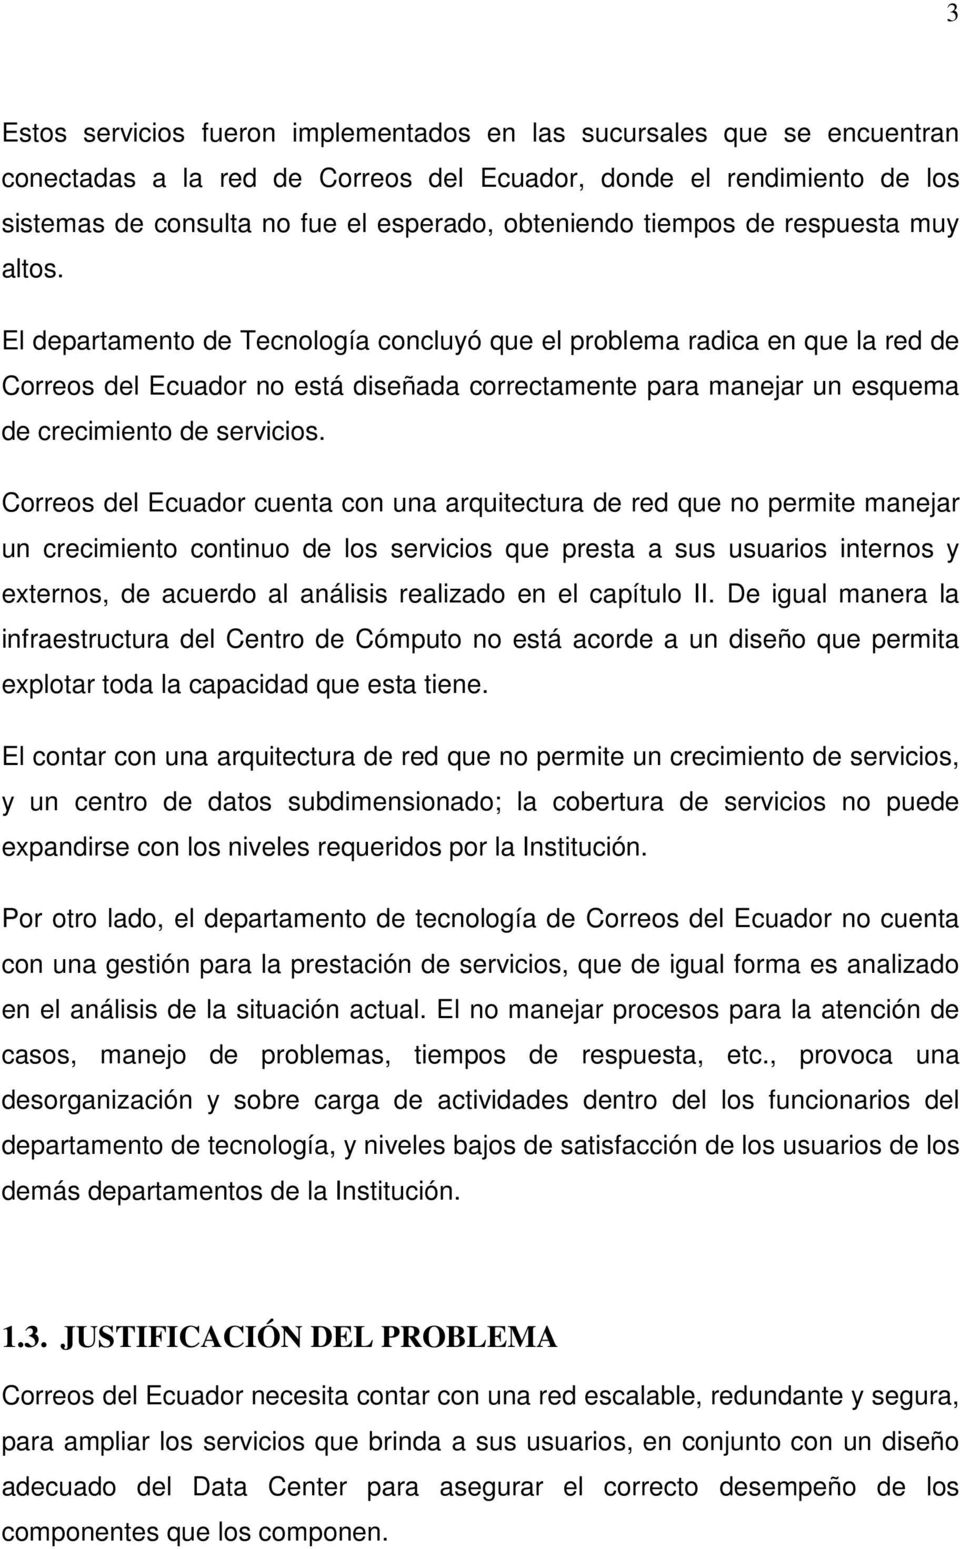 El departamento de Tecnología concluyó que el problema radica en que la red de Correos del Ecuador no está diseñada correctamente para manejar un esquema de crecimiento de servicios.